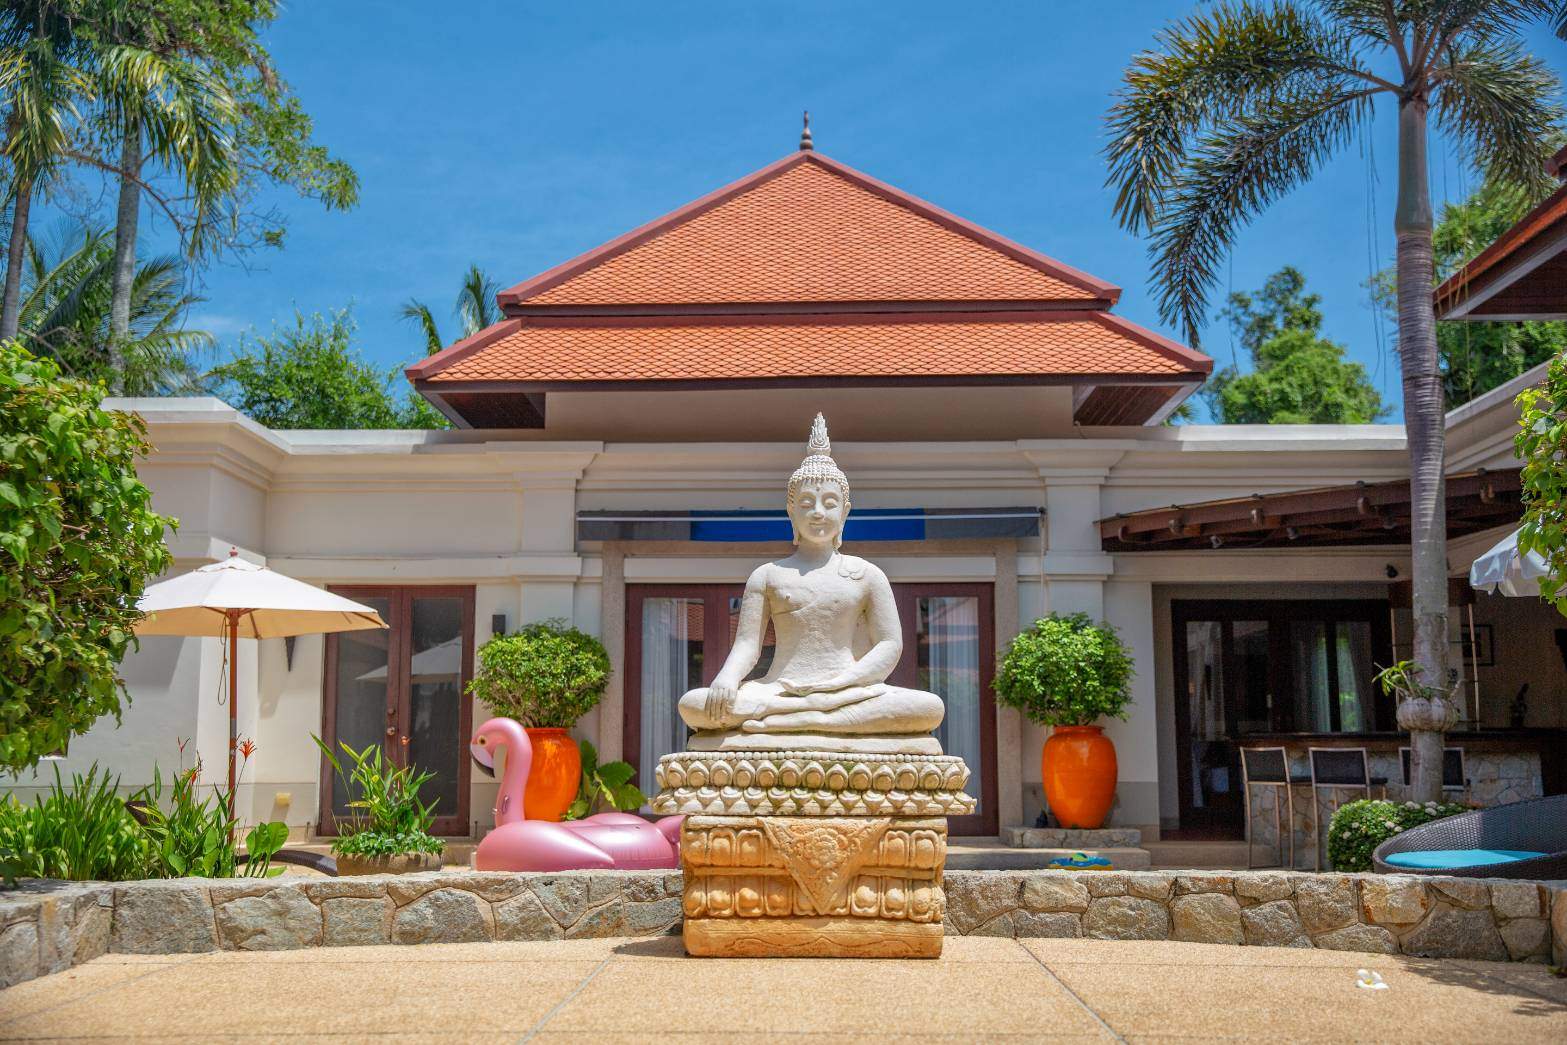 Rent villa Sai Taan 10, Thailand, Phuket, Bang Tao | Villacarte